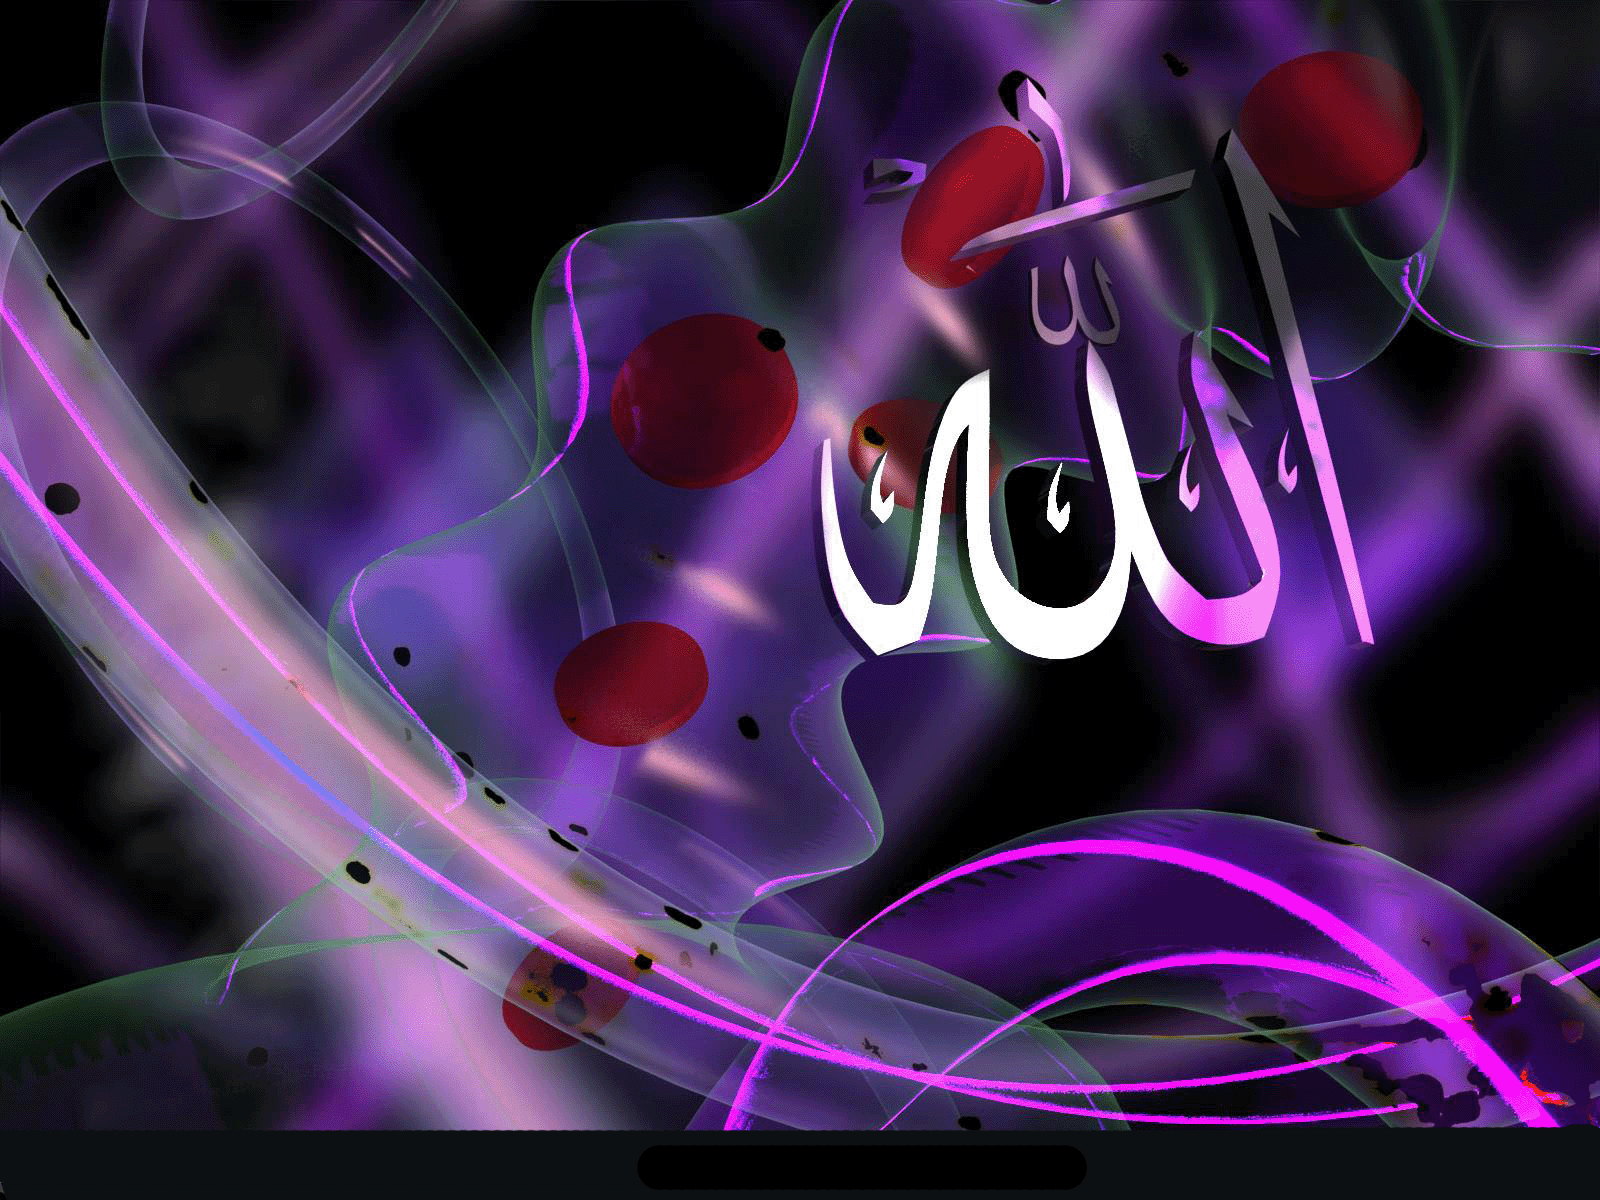 47+] Allah Name Wallpaper 2015 - WallpaperSafari